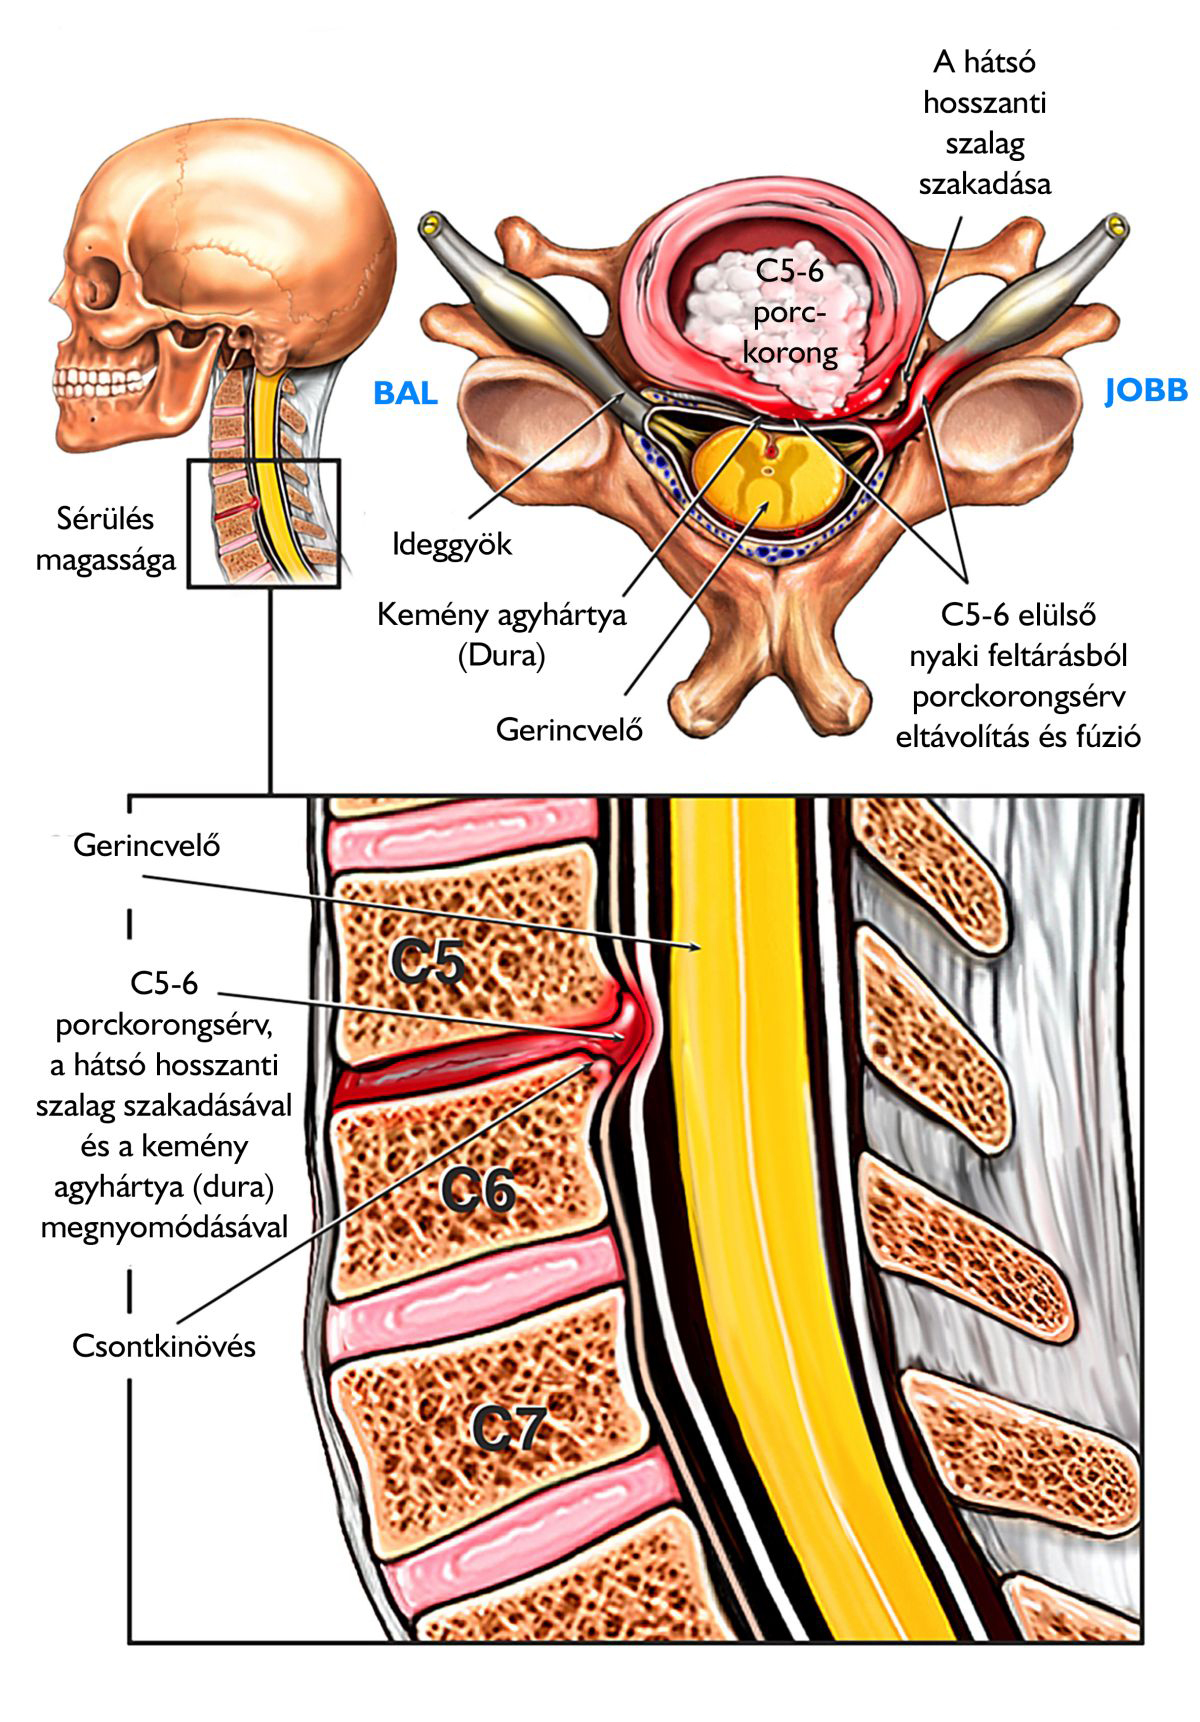 A gerincsérv és porckorongsérv részletesen, érthetően - Gerincfórum